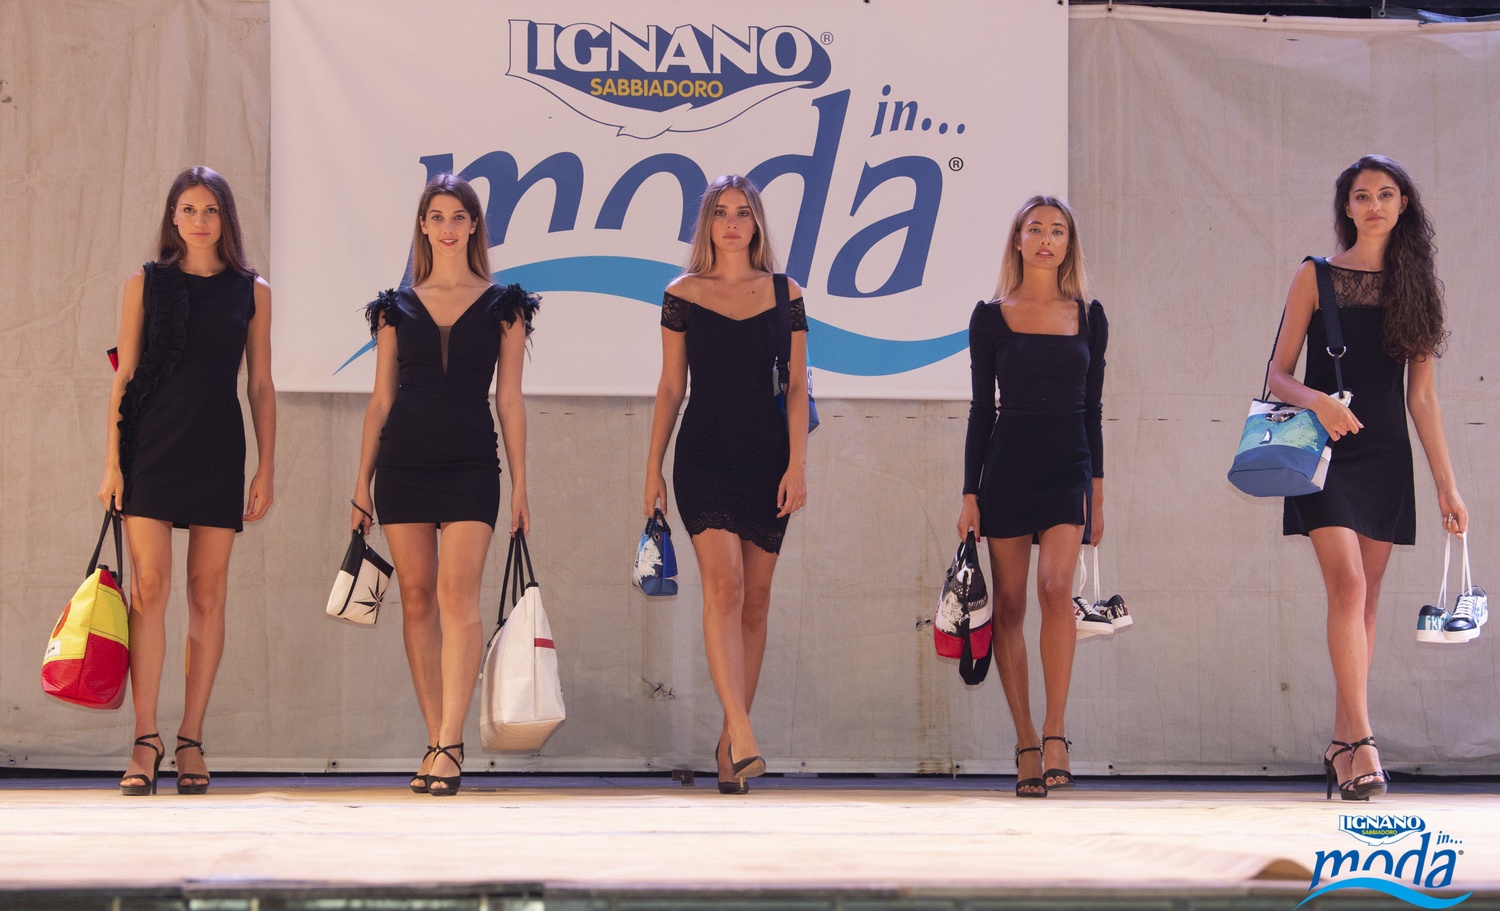 Foto di Lignano in...moda